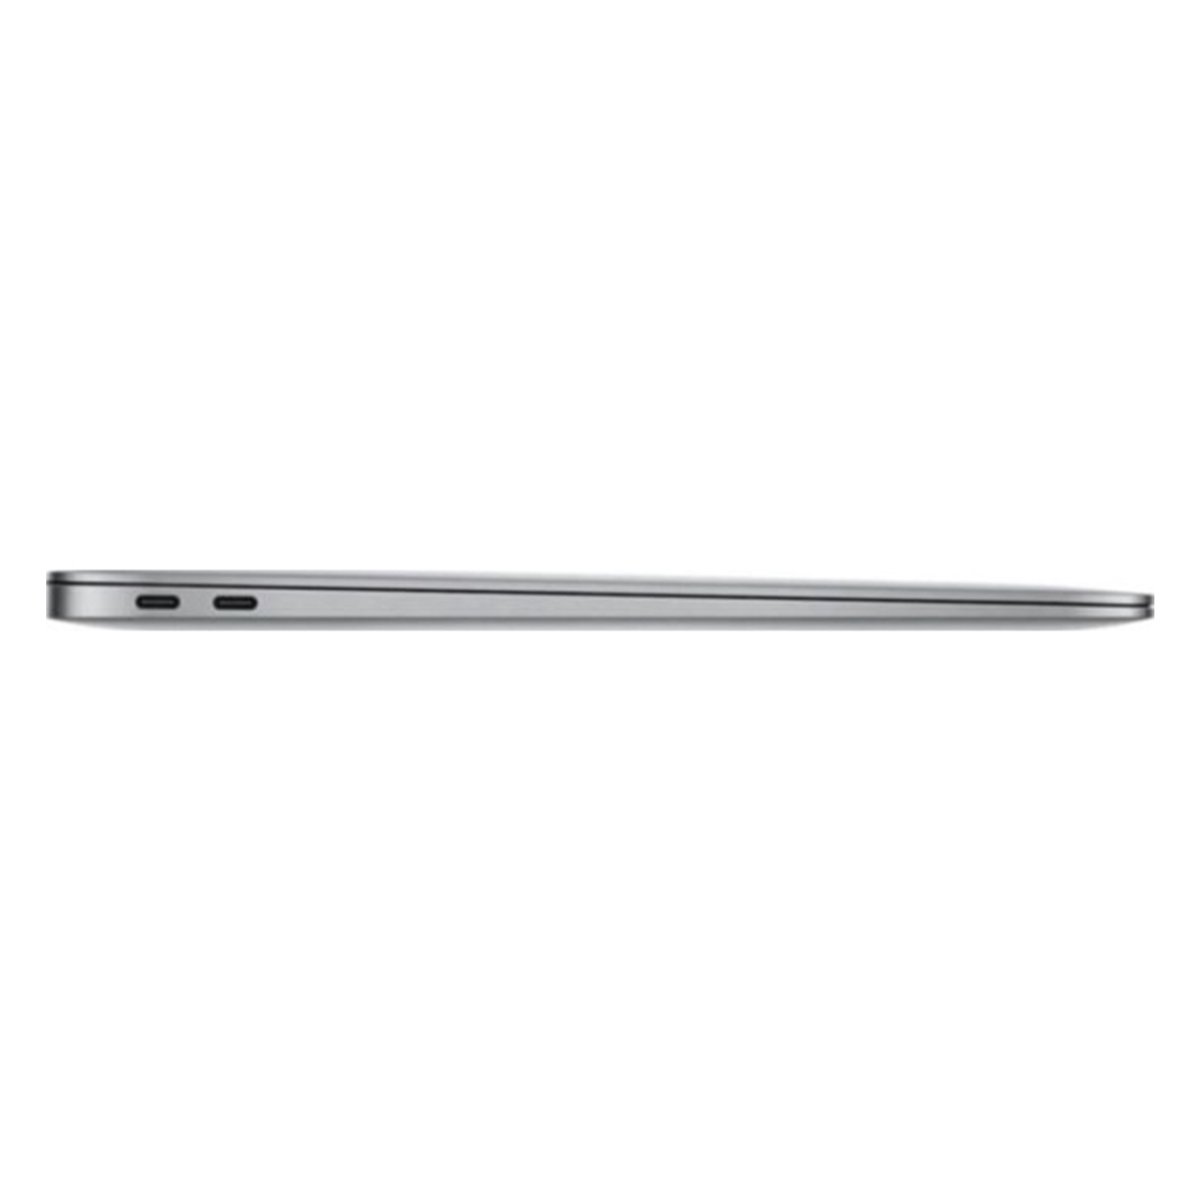 Apple MacBook Air 13.3 "MVFJ2 Space Grey